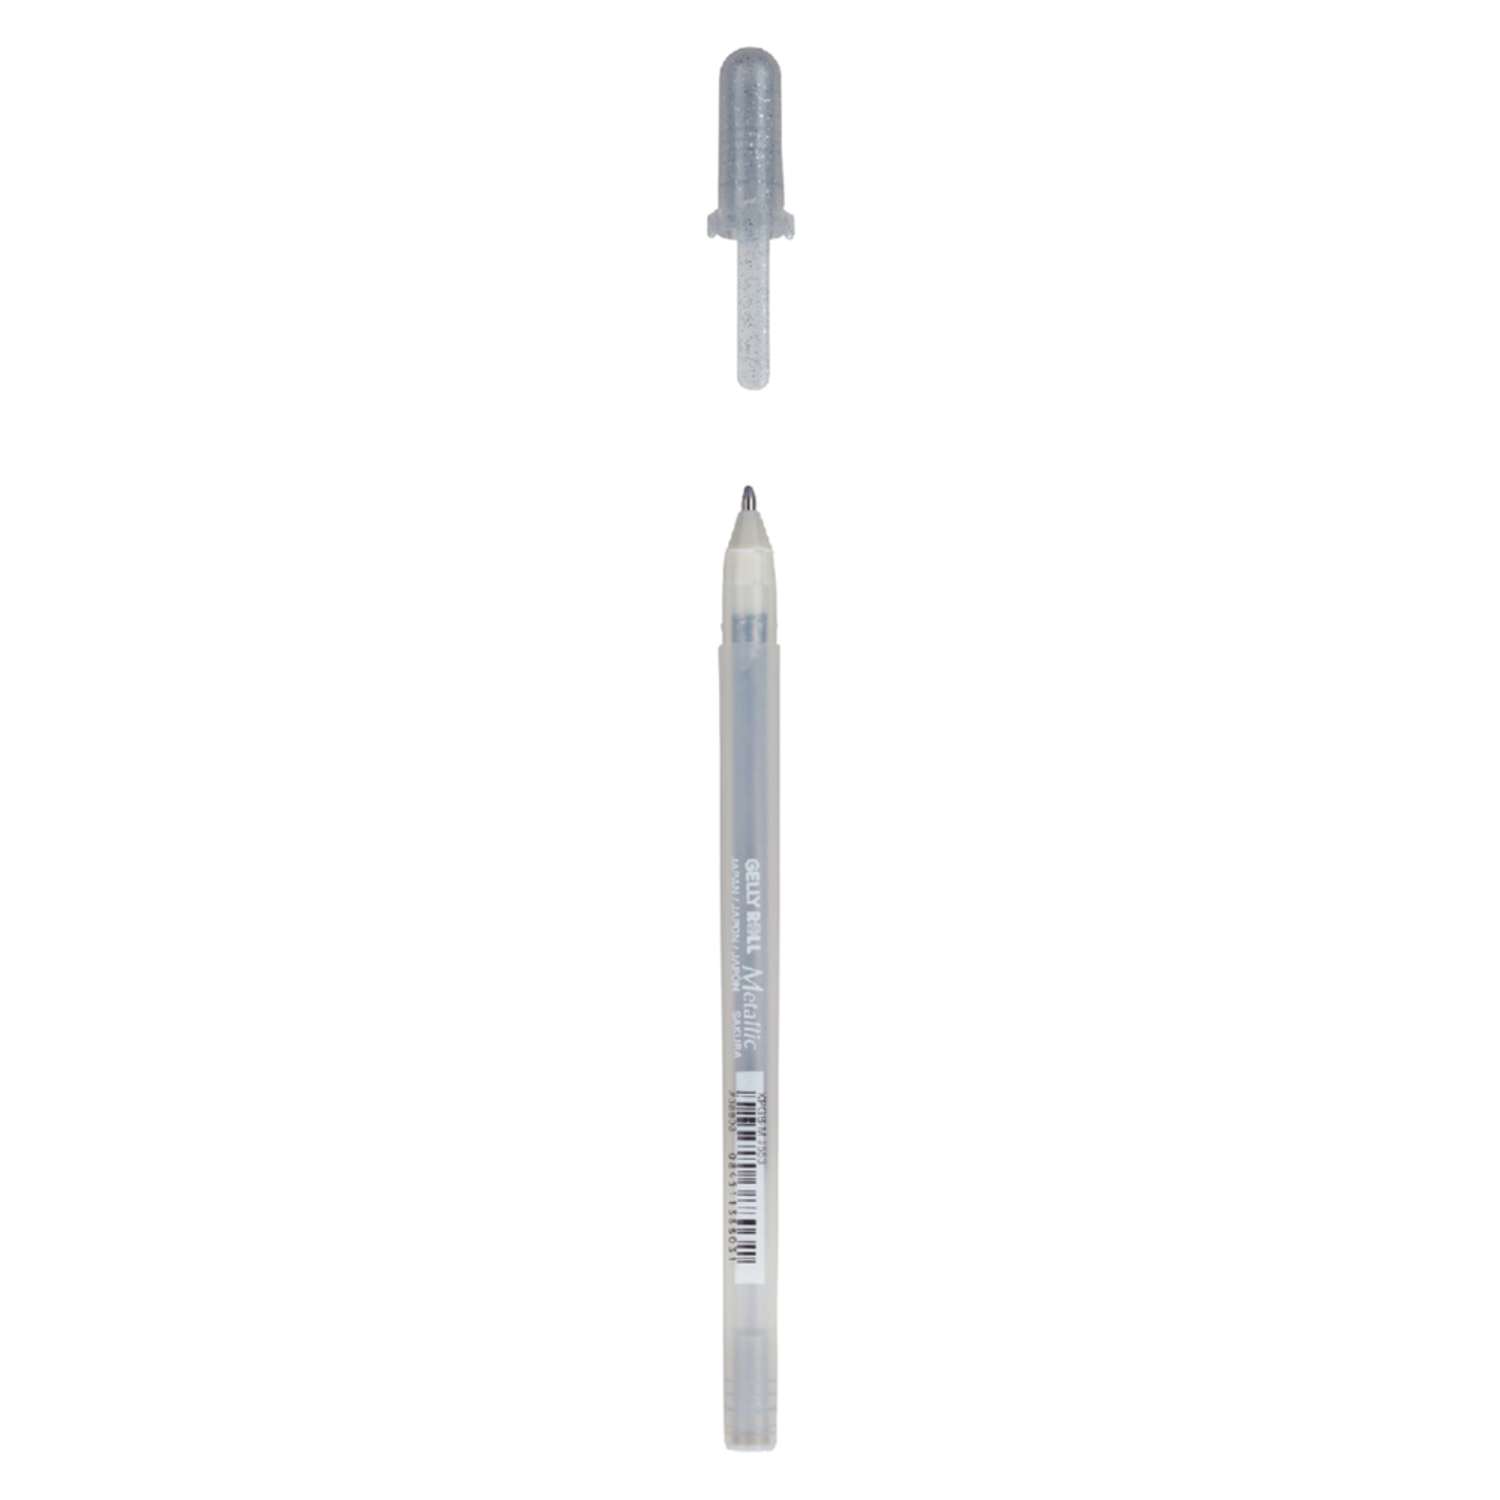 Ручка гелевая Sakura Gelly Roll Metallic цвет чернил: серебряный - фото 2